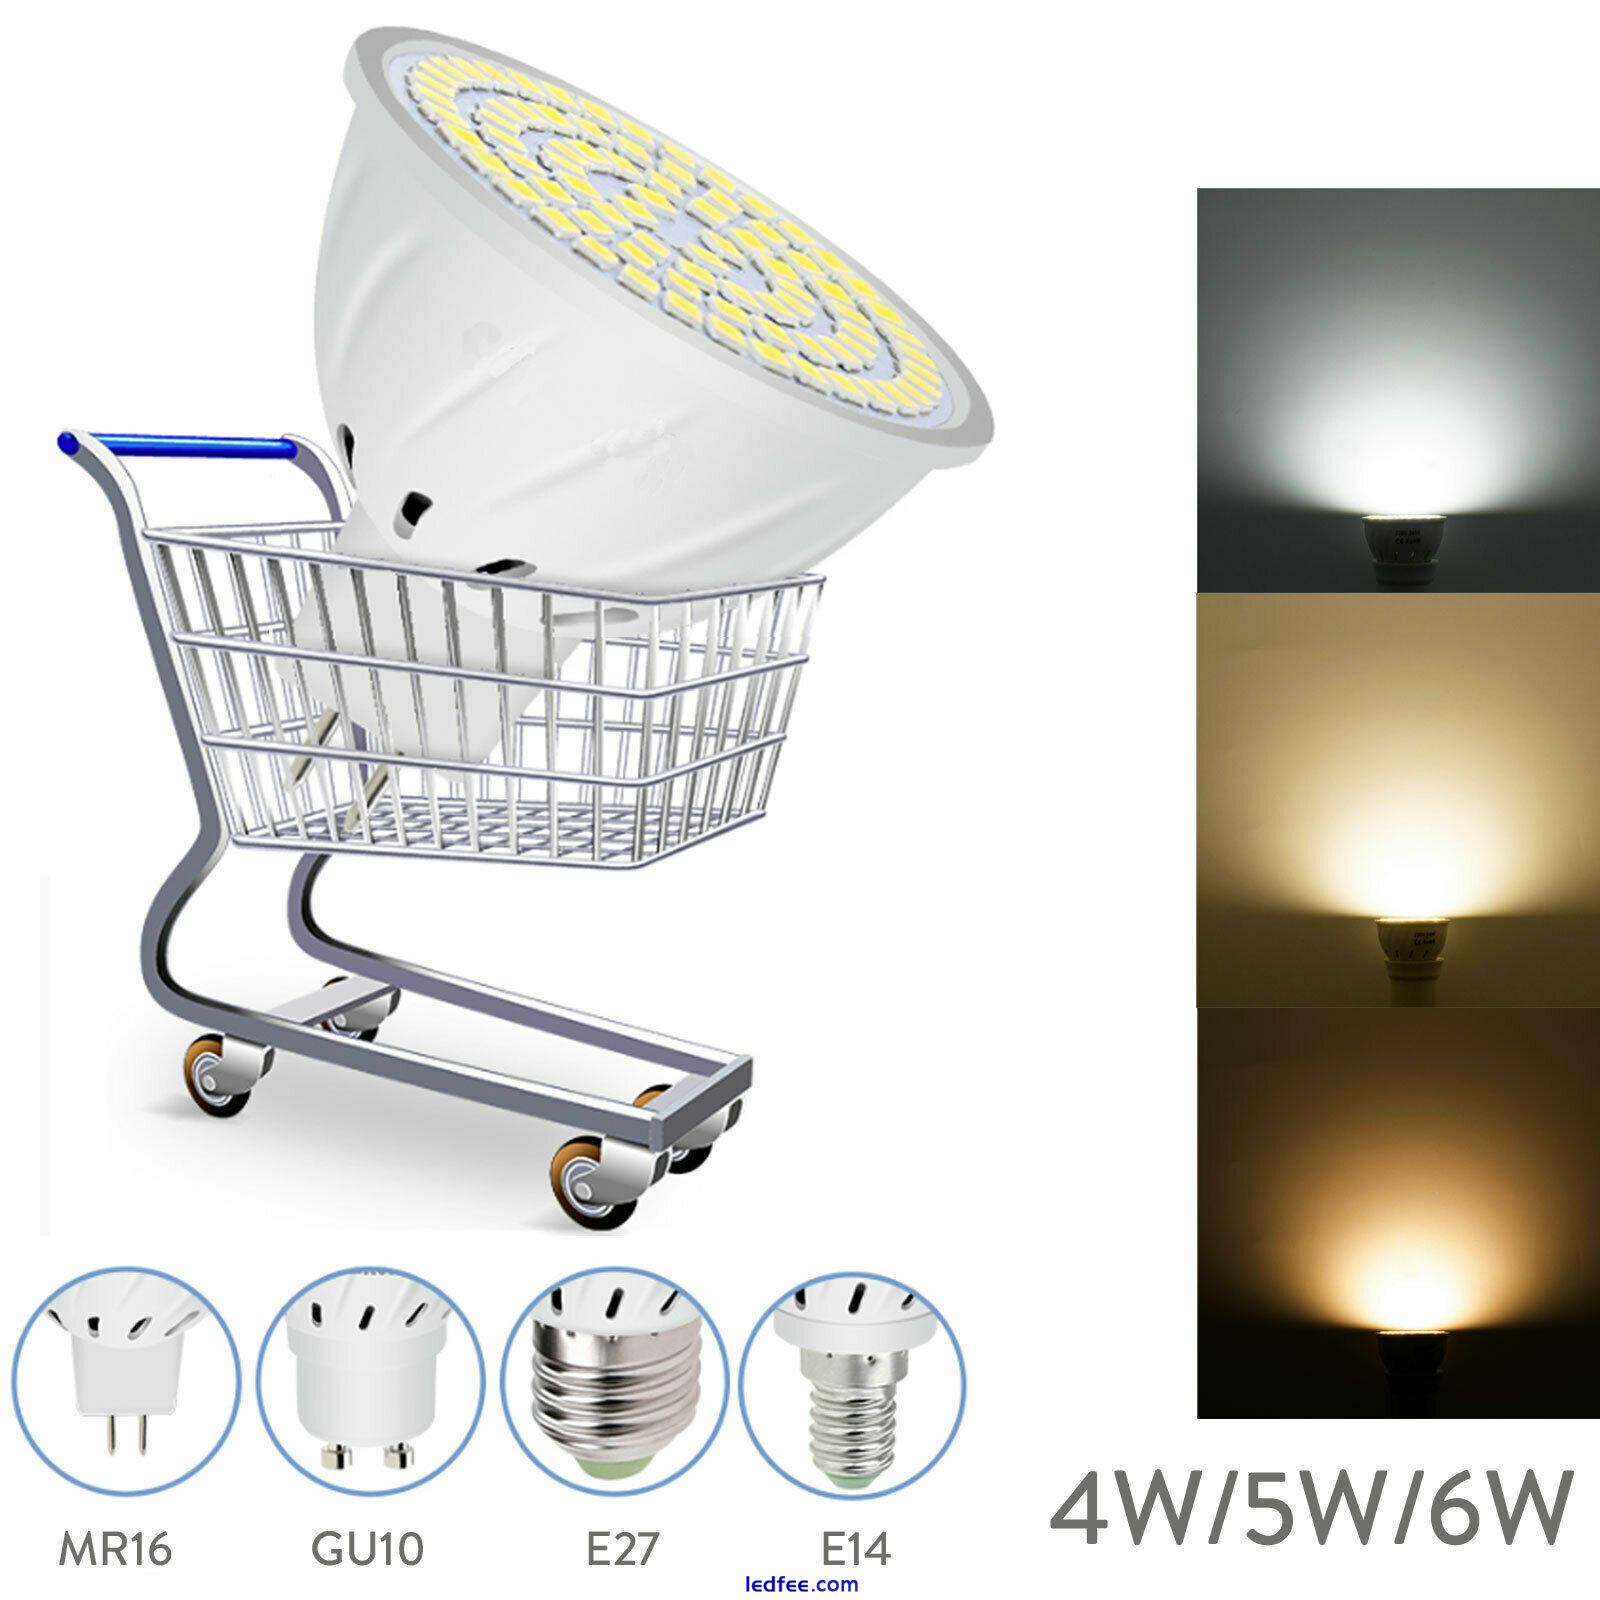 LED Spotlights 4W 5W 6W 230V SMD Bulbs GU10 MR16 White Spot Light Lamps for Home 1 